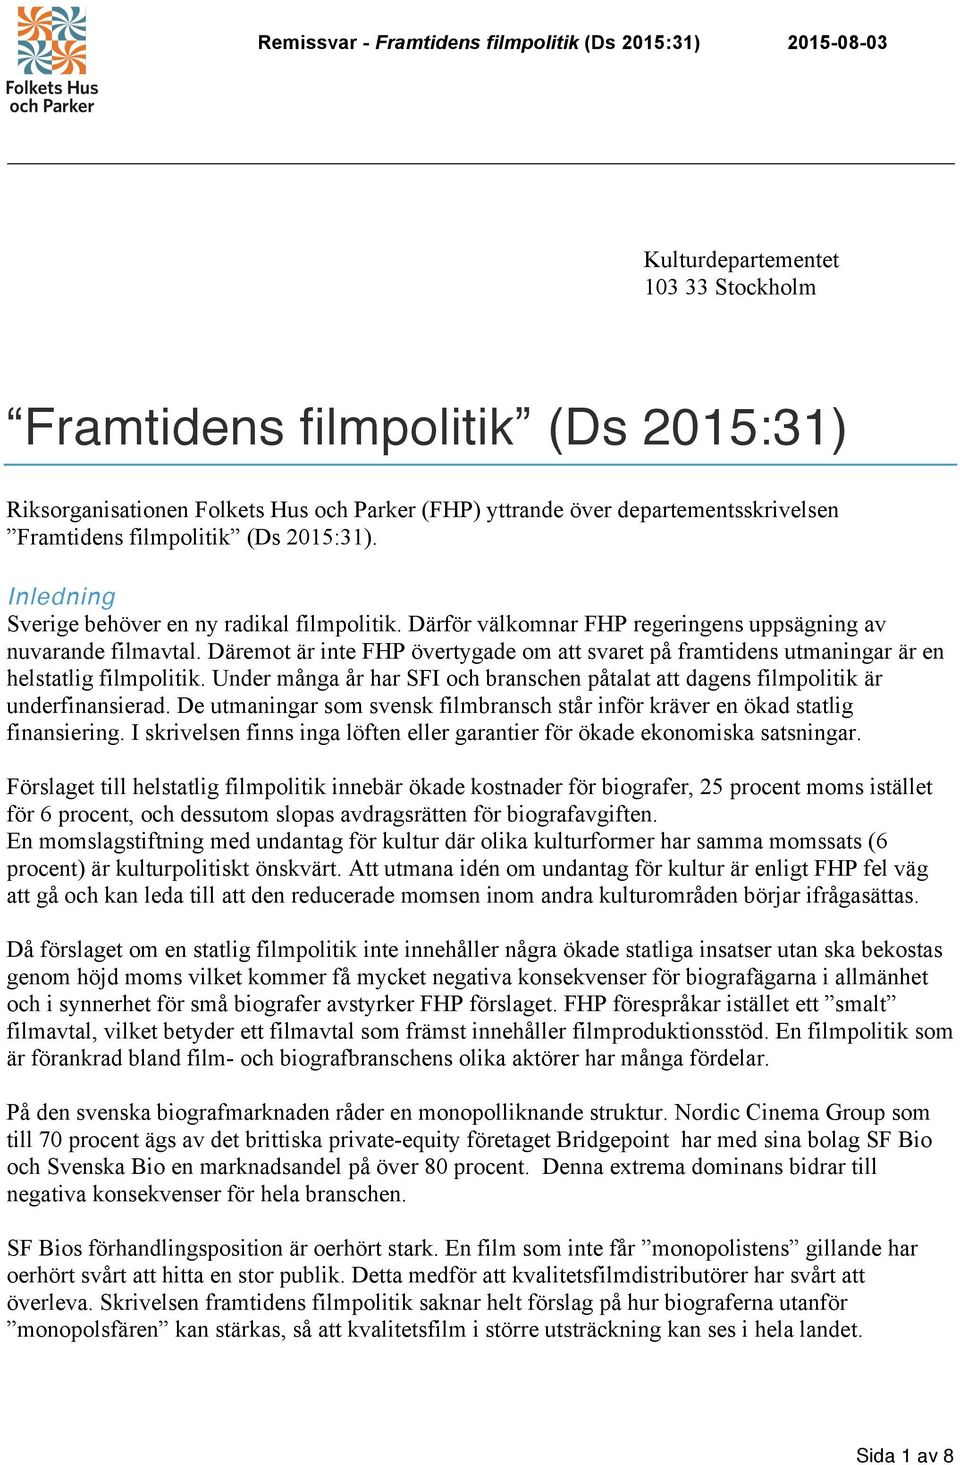 Däremot är inte FHP övertygade om att svaret på framtidens utmaningar är en helstatlig filmpolitik. Under många år har SFI och branschen påtalat att dagens filmpolitik är underfinansierad.